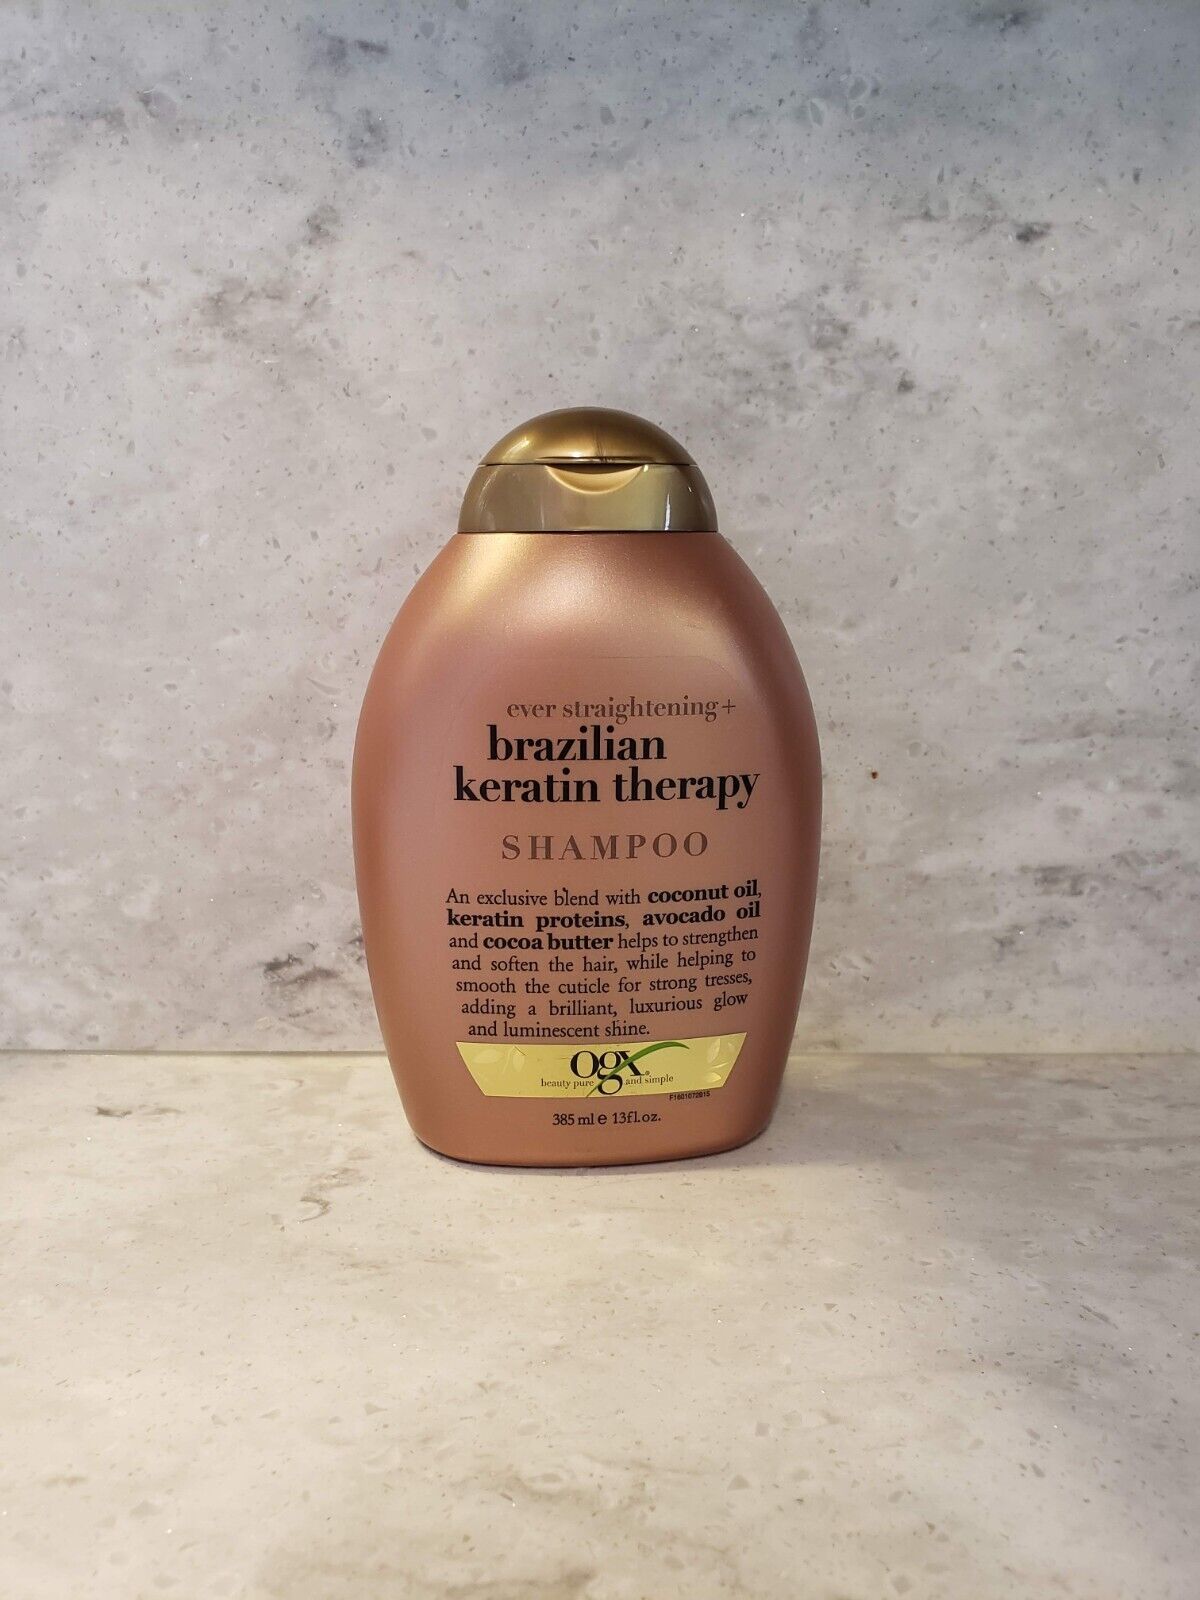 OGX Brazilian Keratin Therapy Shampoo With Coconut And Avocado Oil 13 fl oz New - $11.87